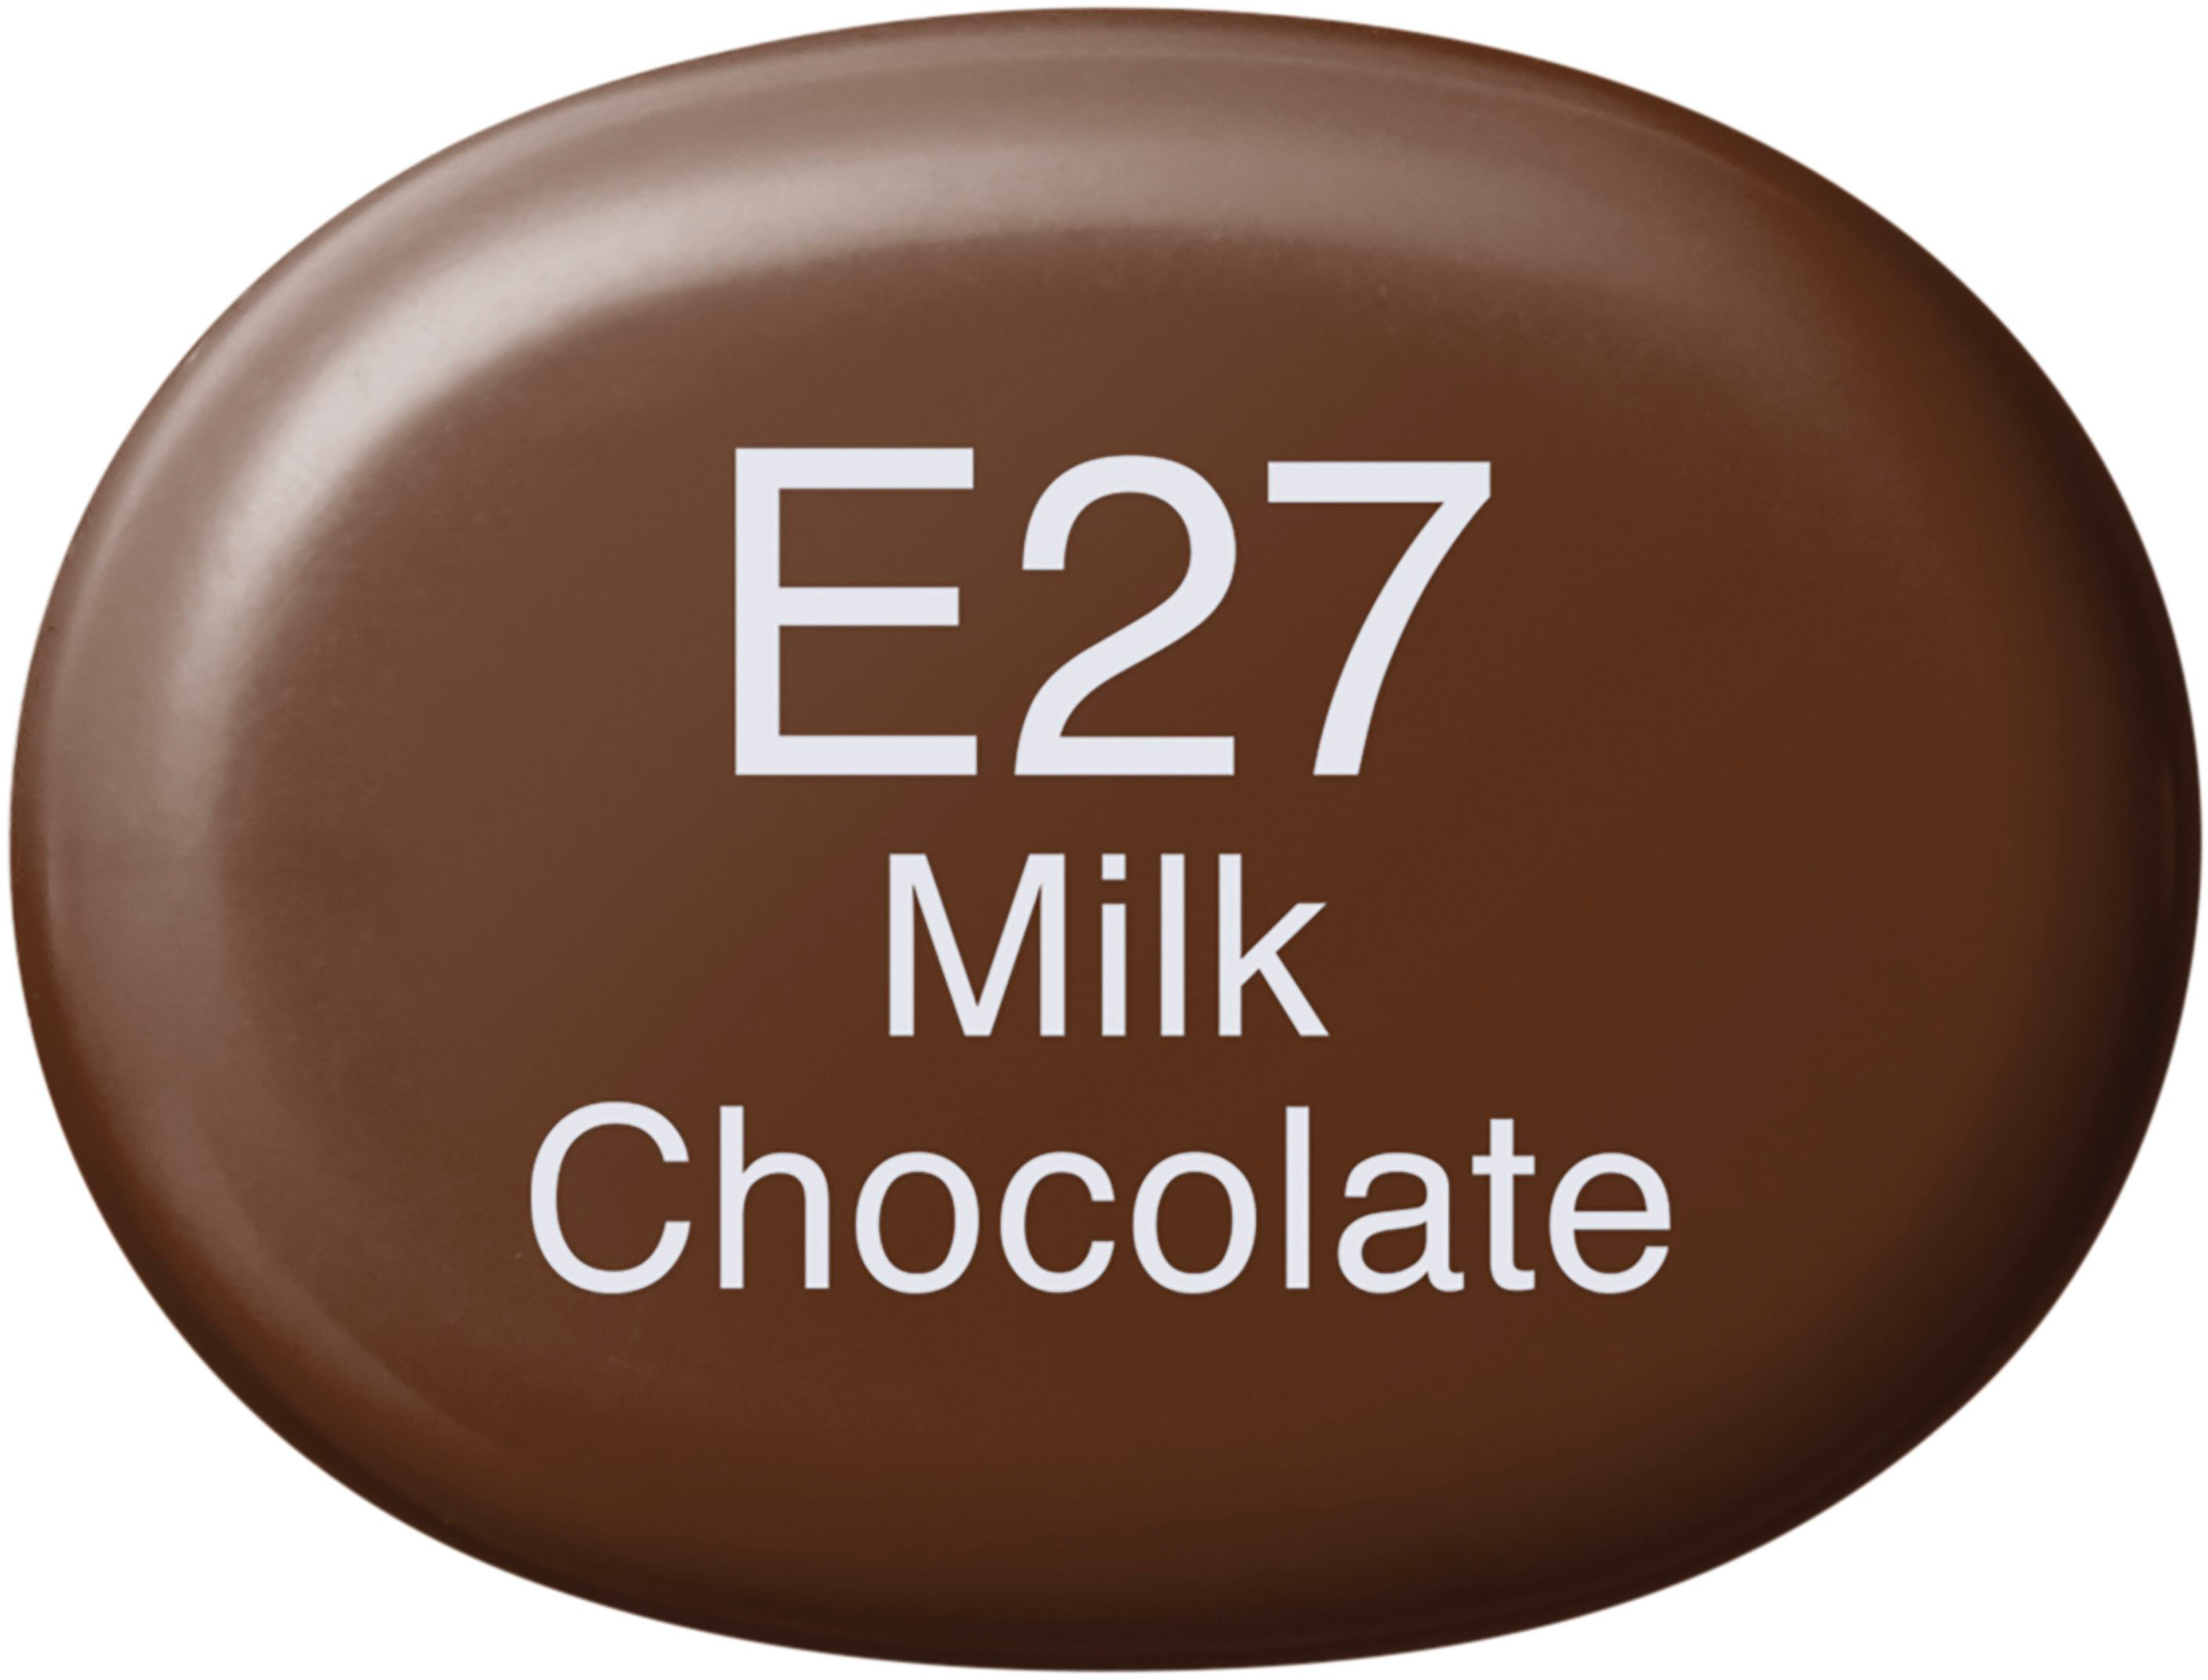 COPIC Marker Sketch 21075120 E27 - Milk Chocolate